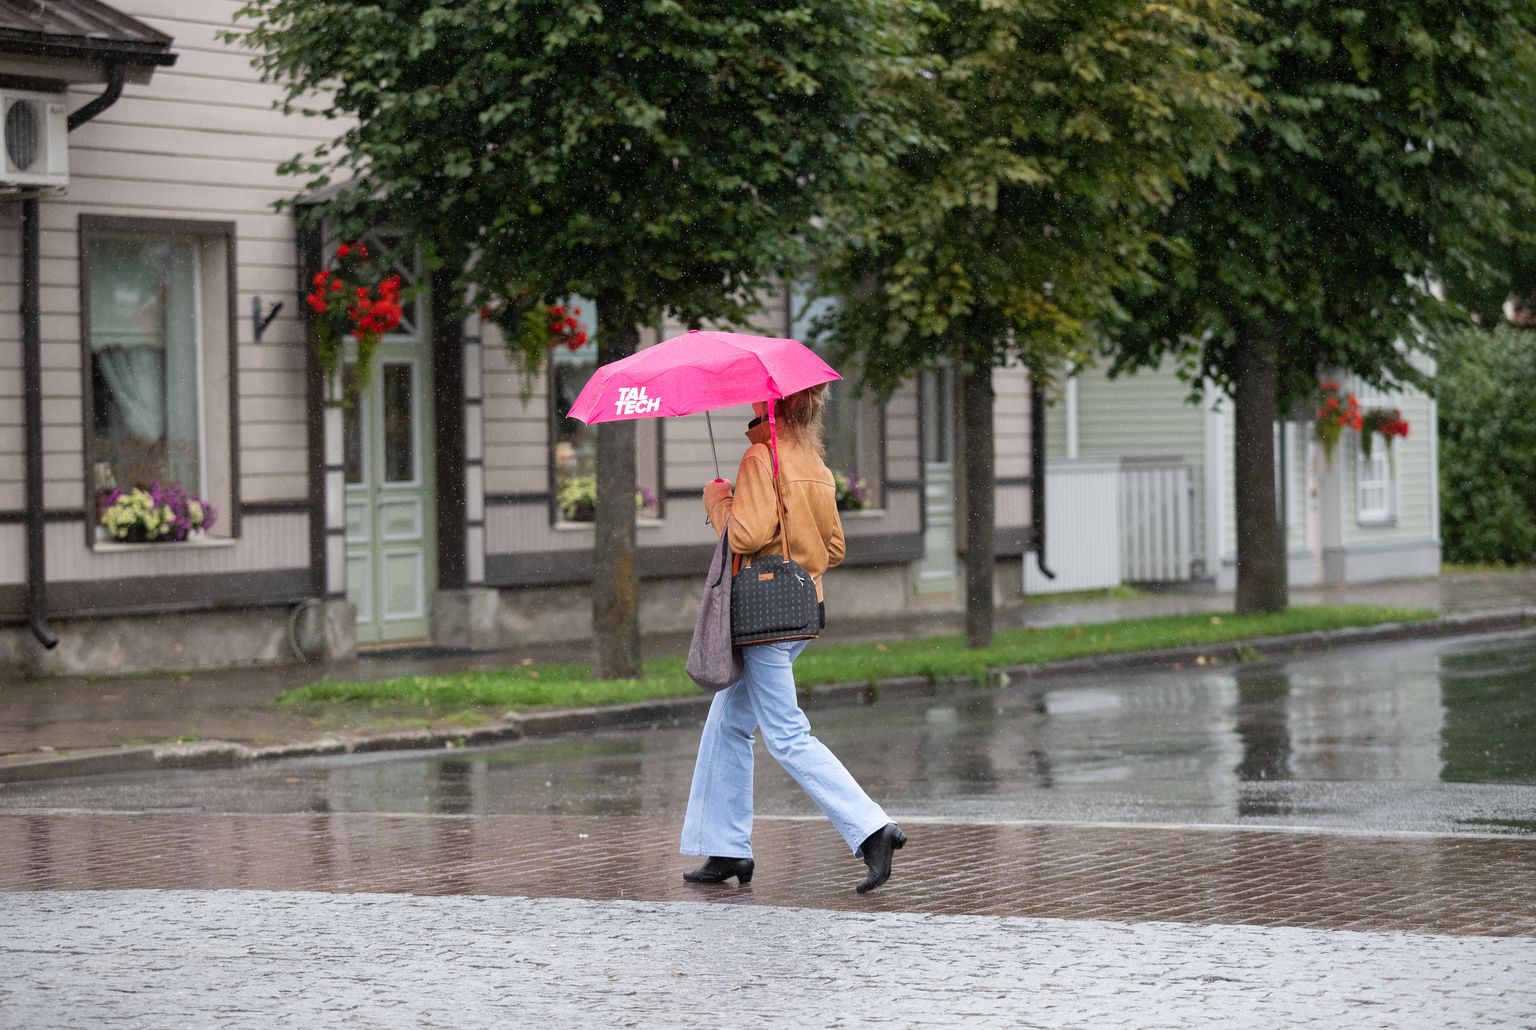 Inimene vihma käes kõndimas, hoides käes vihmavarju.